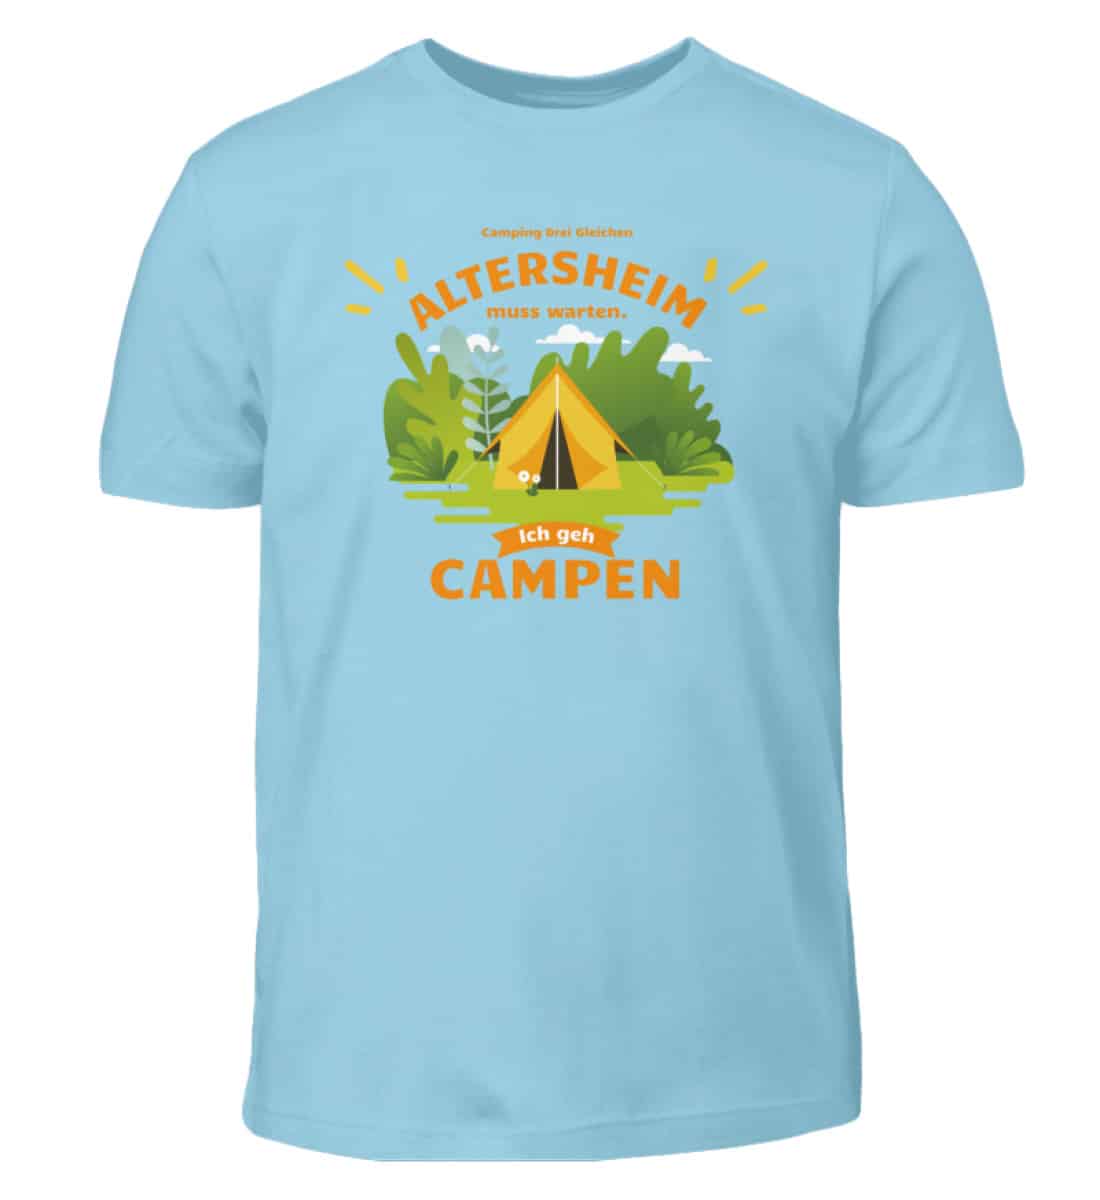 Altersheim muss warten - Campen Zelt - Kinder T-Shirt-674